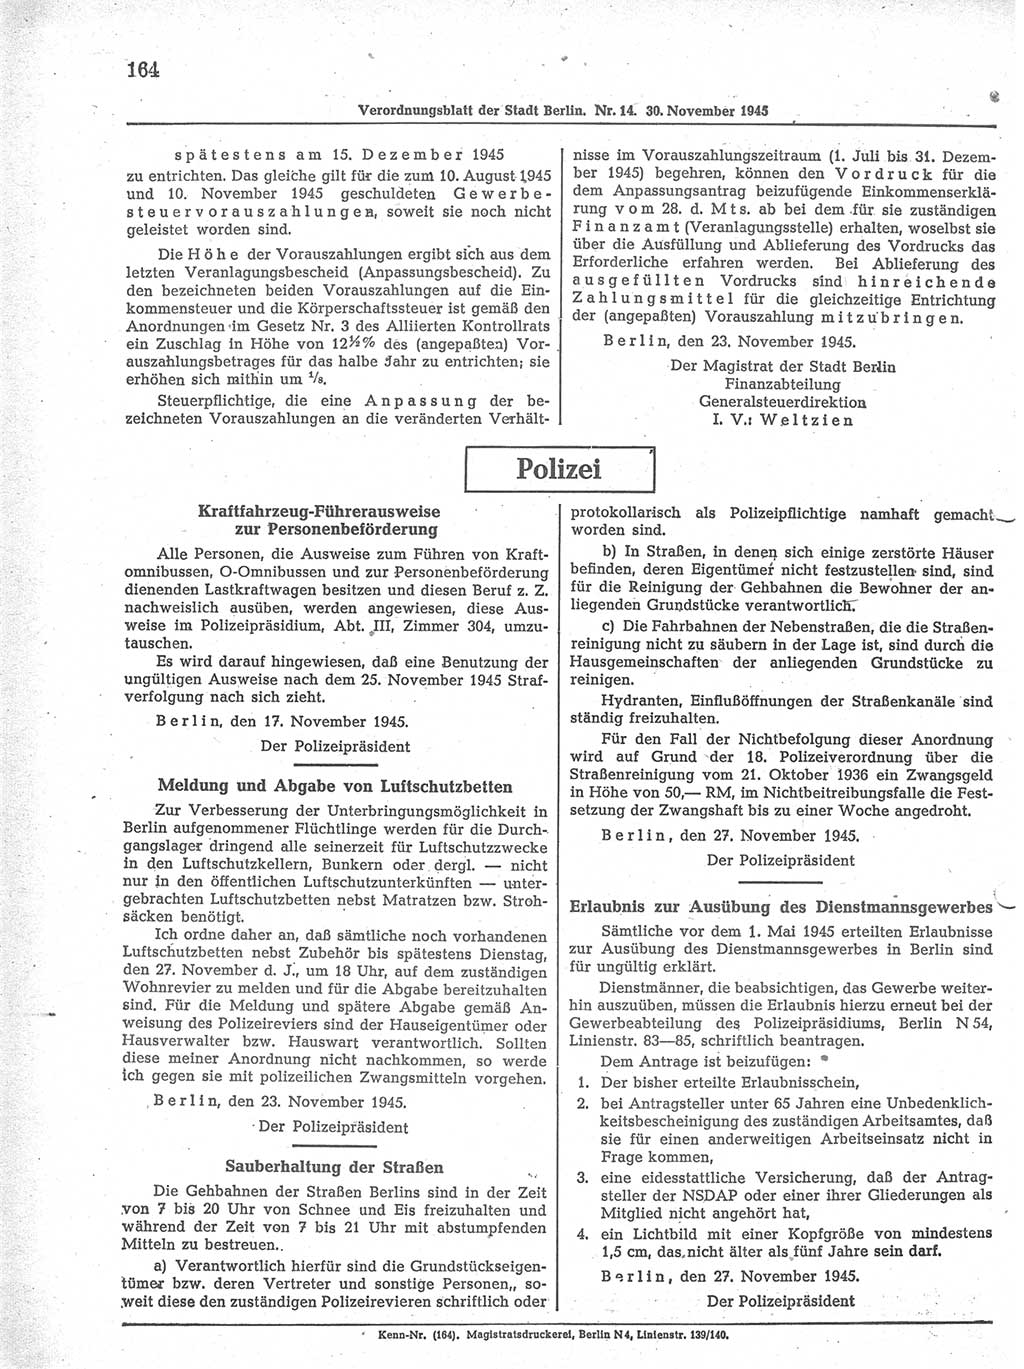 Verordnungsblatt (VOBl.) der Stadt Berlin 1945, Seite 164 (VOBl. Bln. 1945, S. 164)